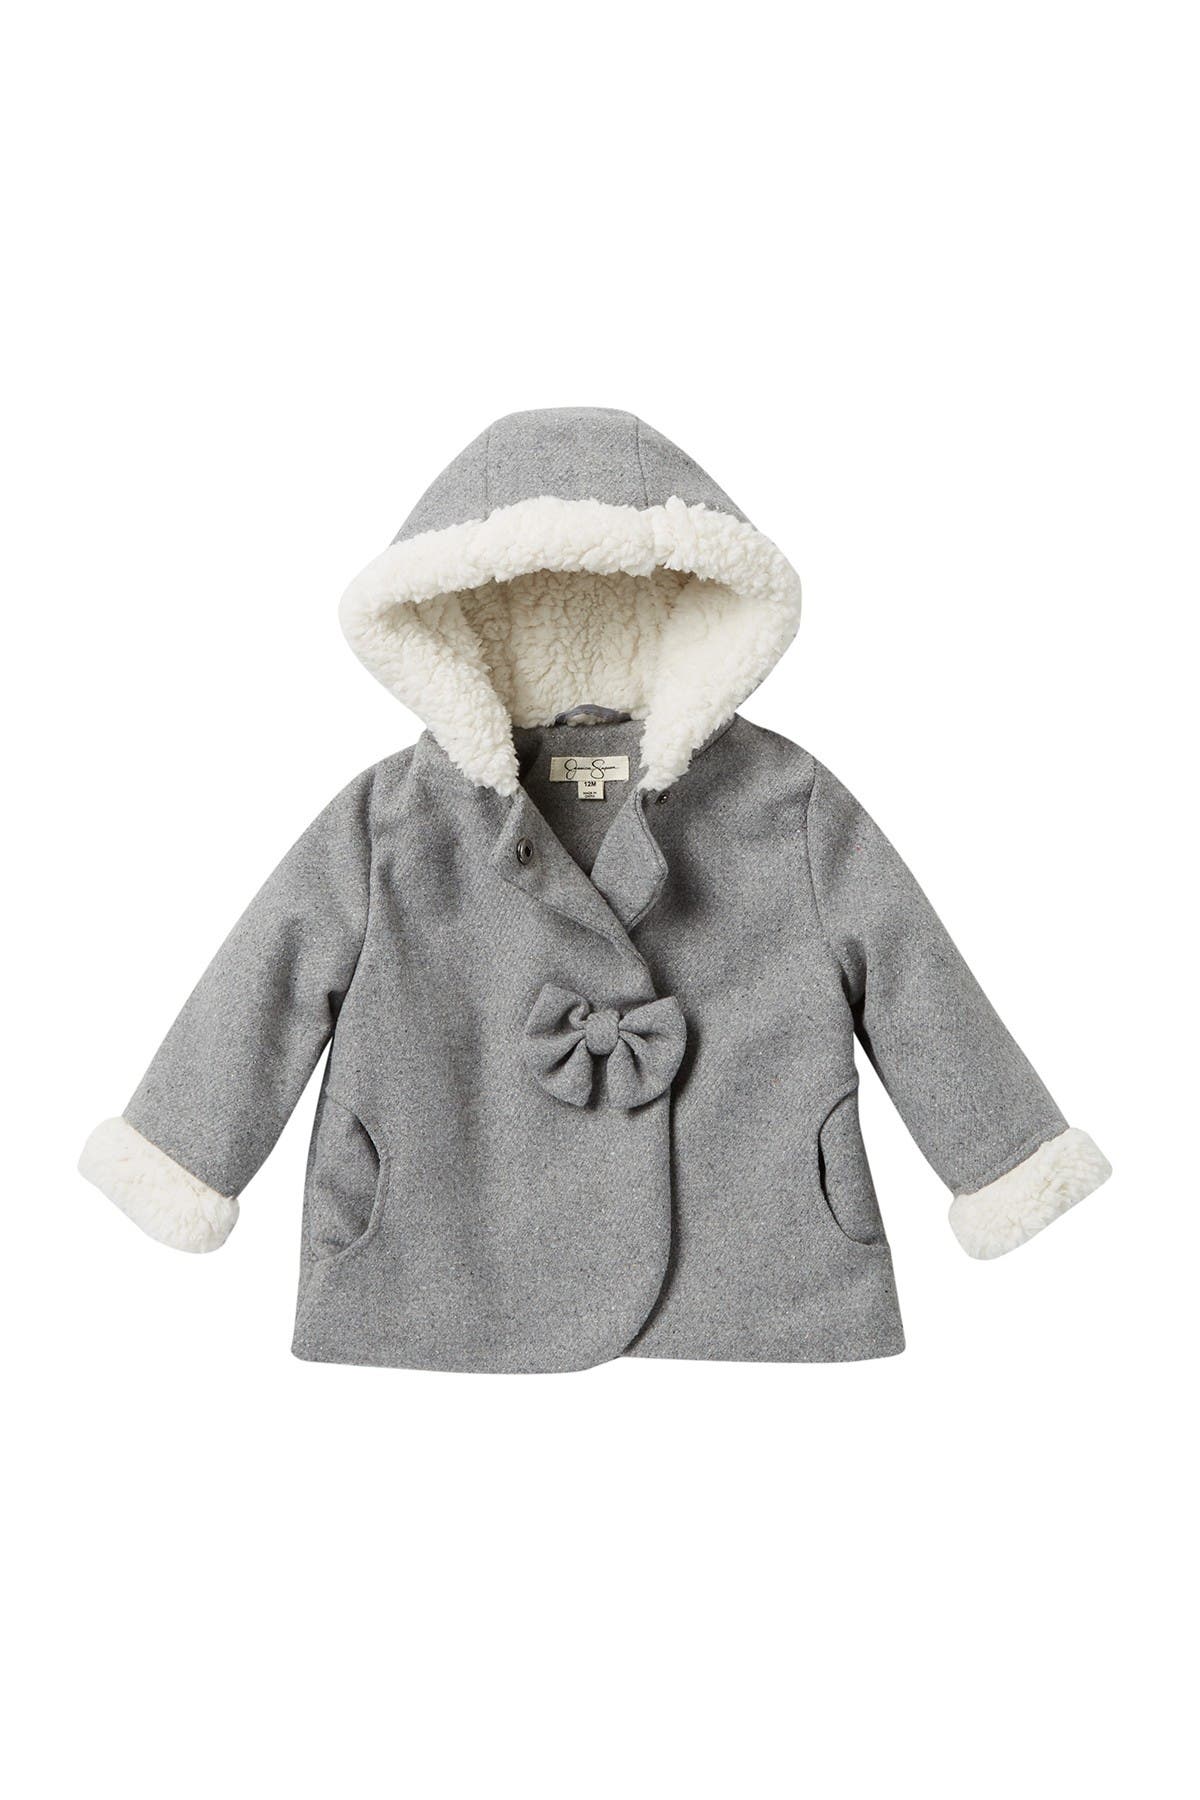 jessica simpson baby coat